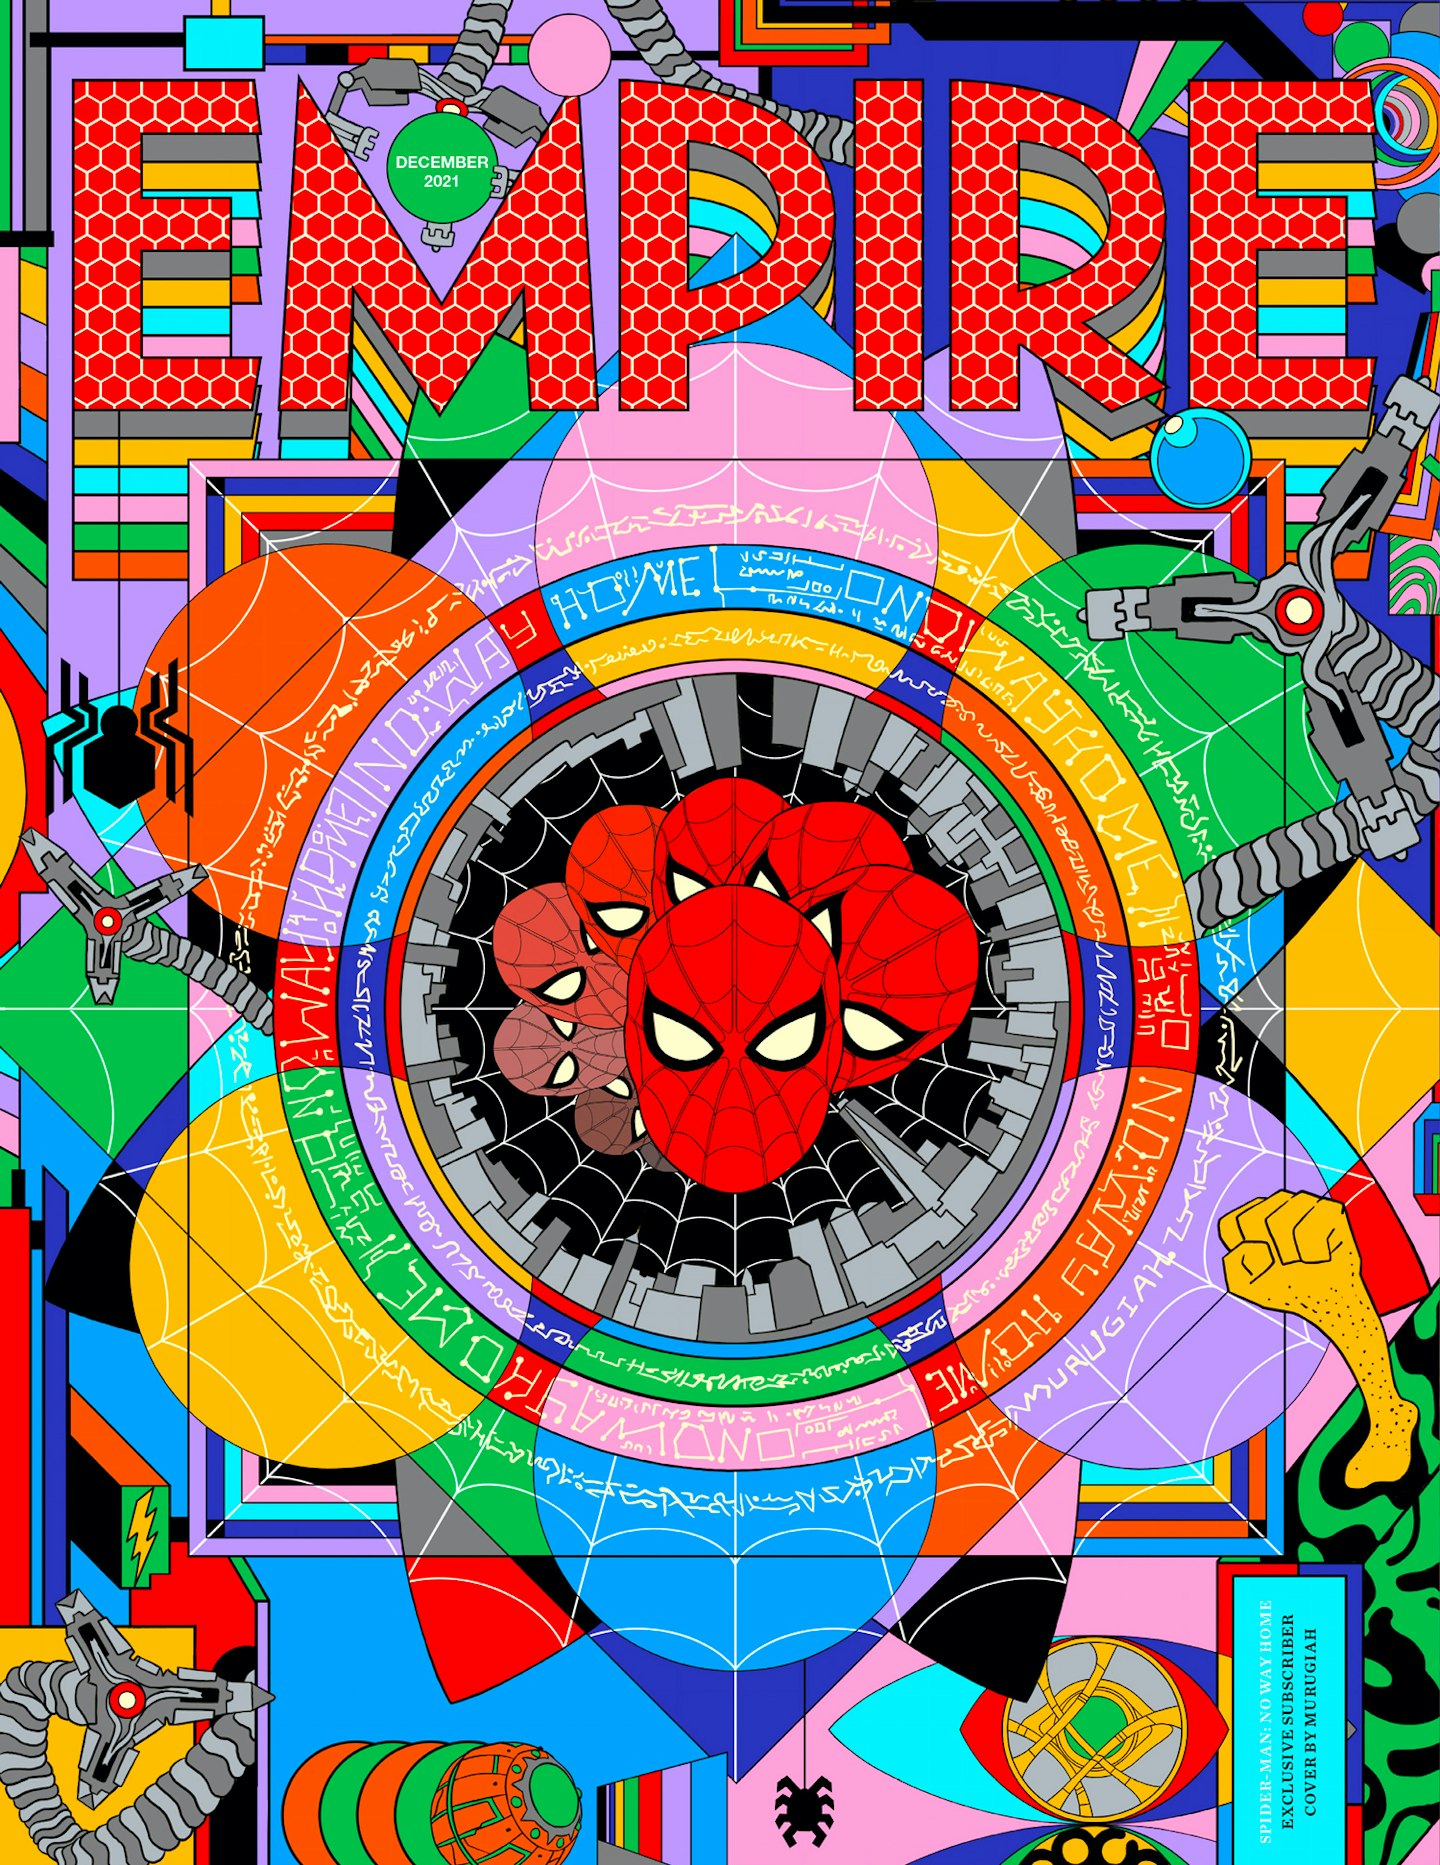 Empire – December 2021 subscriber cover